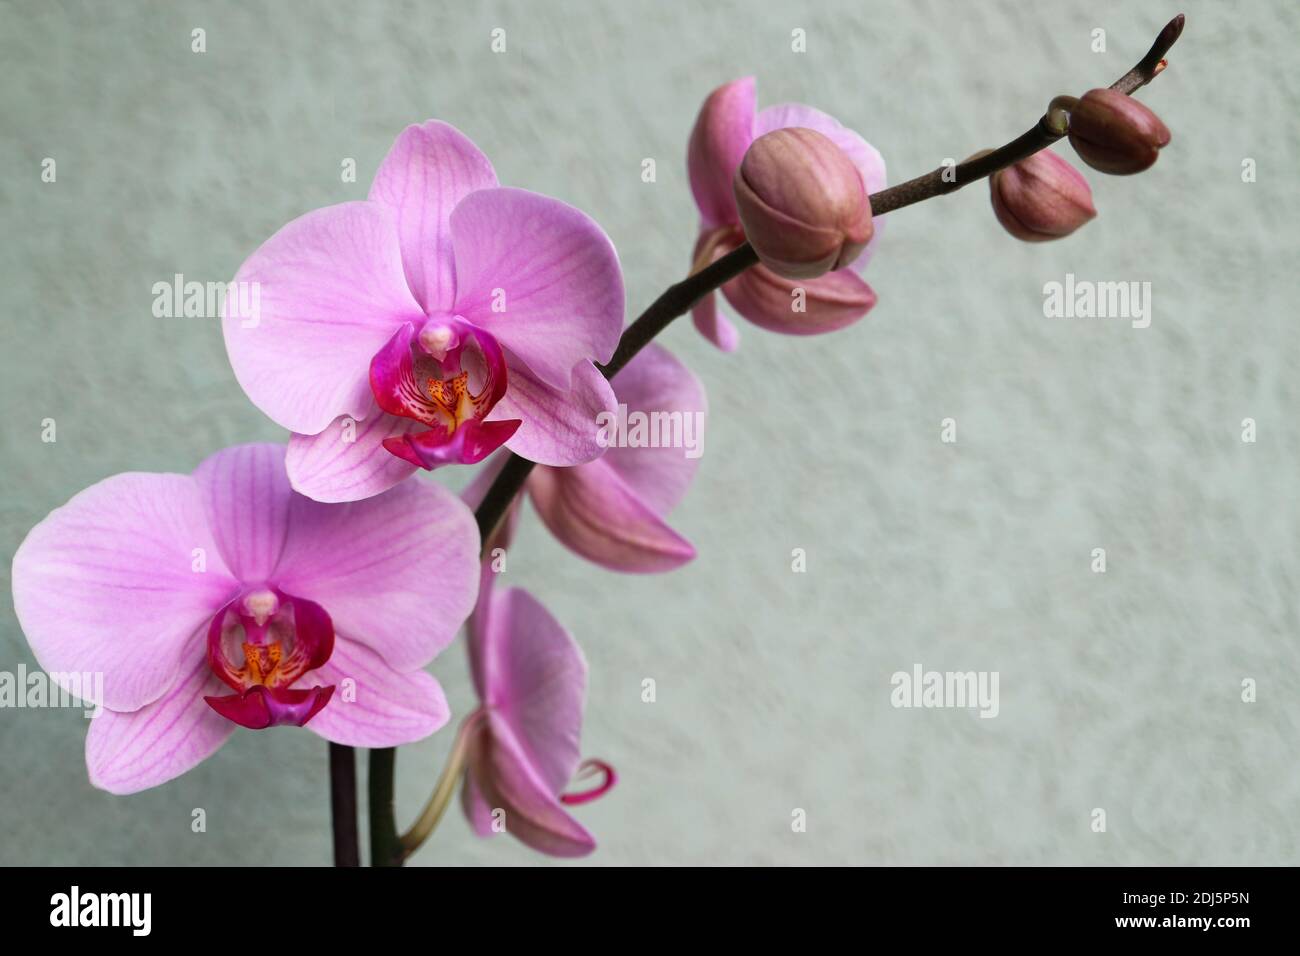 Rosa Orchidee mit zarten Blütenblättern und grünen Wand Hintergrund, rosa Orchidee blüht mit Knospen Makro, Schönheit in der Natur, exotische Blumen, Makro-Fotografie Stockfoto